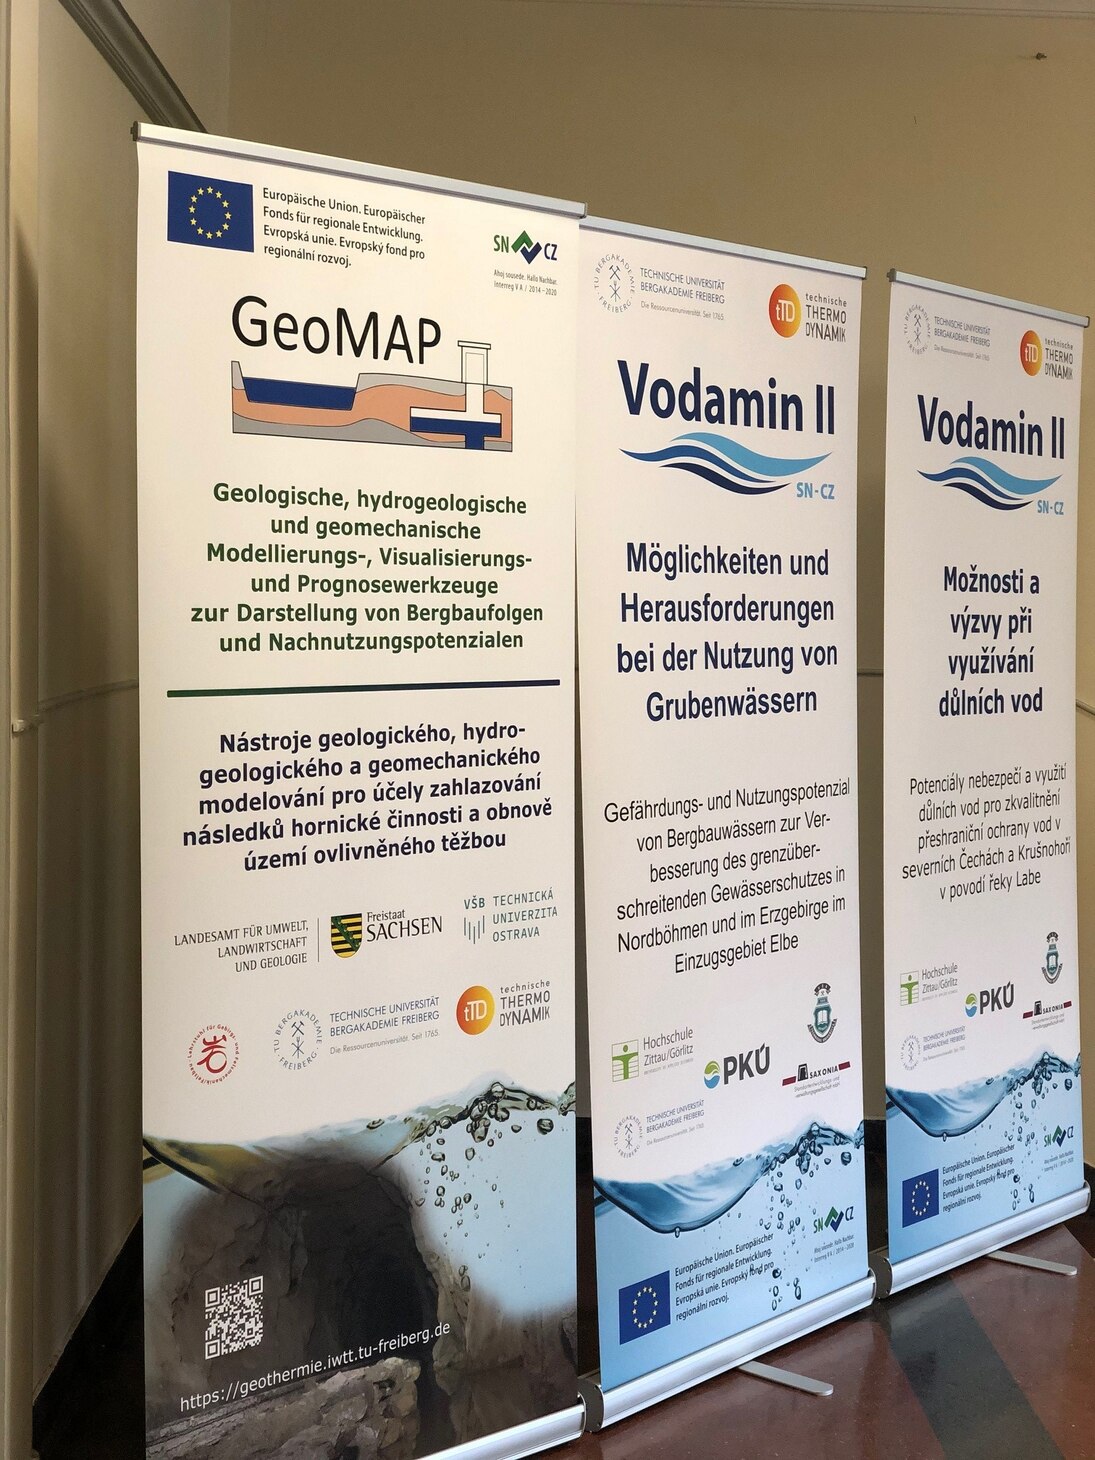 Vorstellung der EU-Projekte GeoMAP und Vodamin II im Foyer der Oelsnitzer Stadthalle